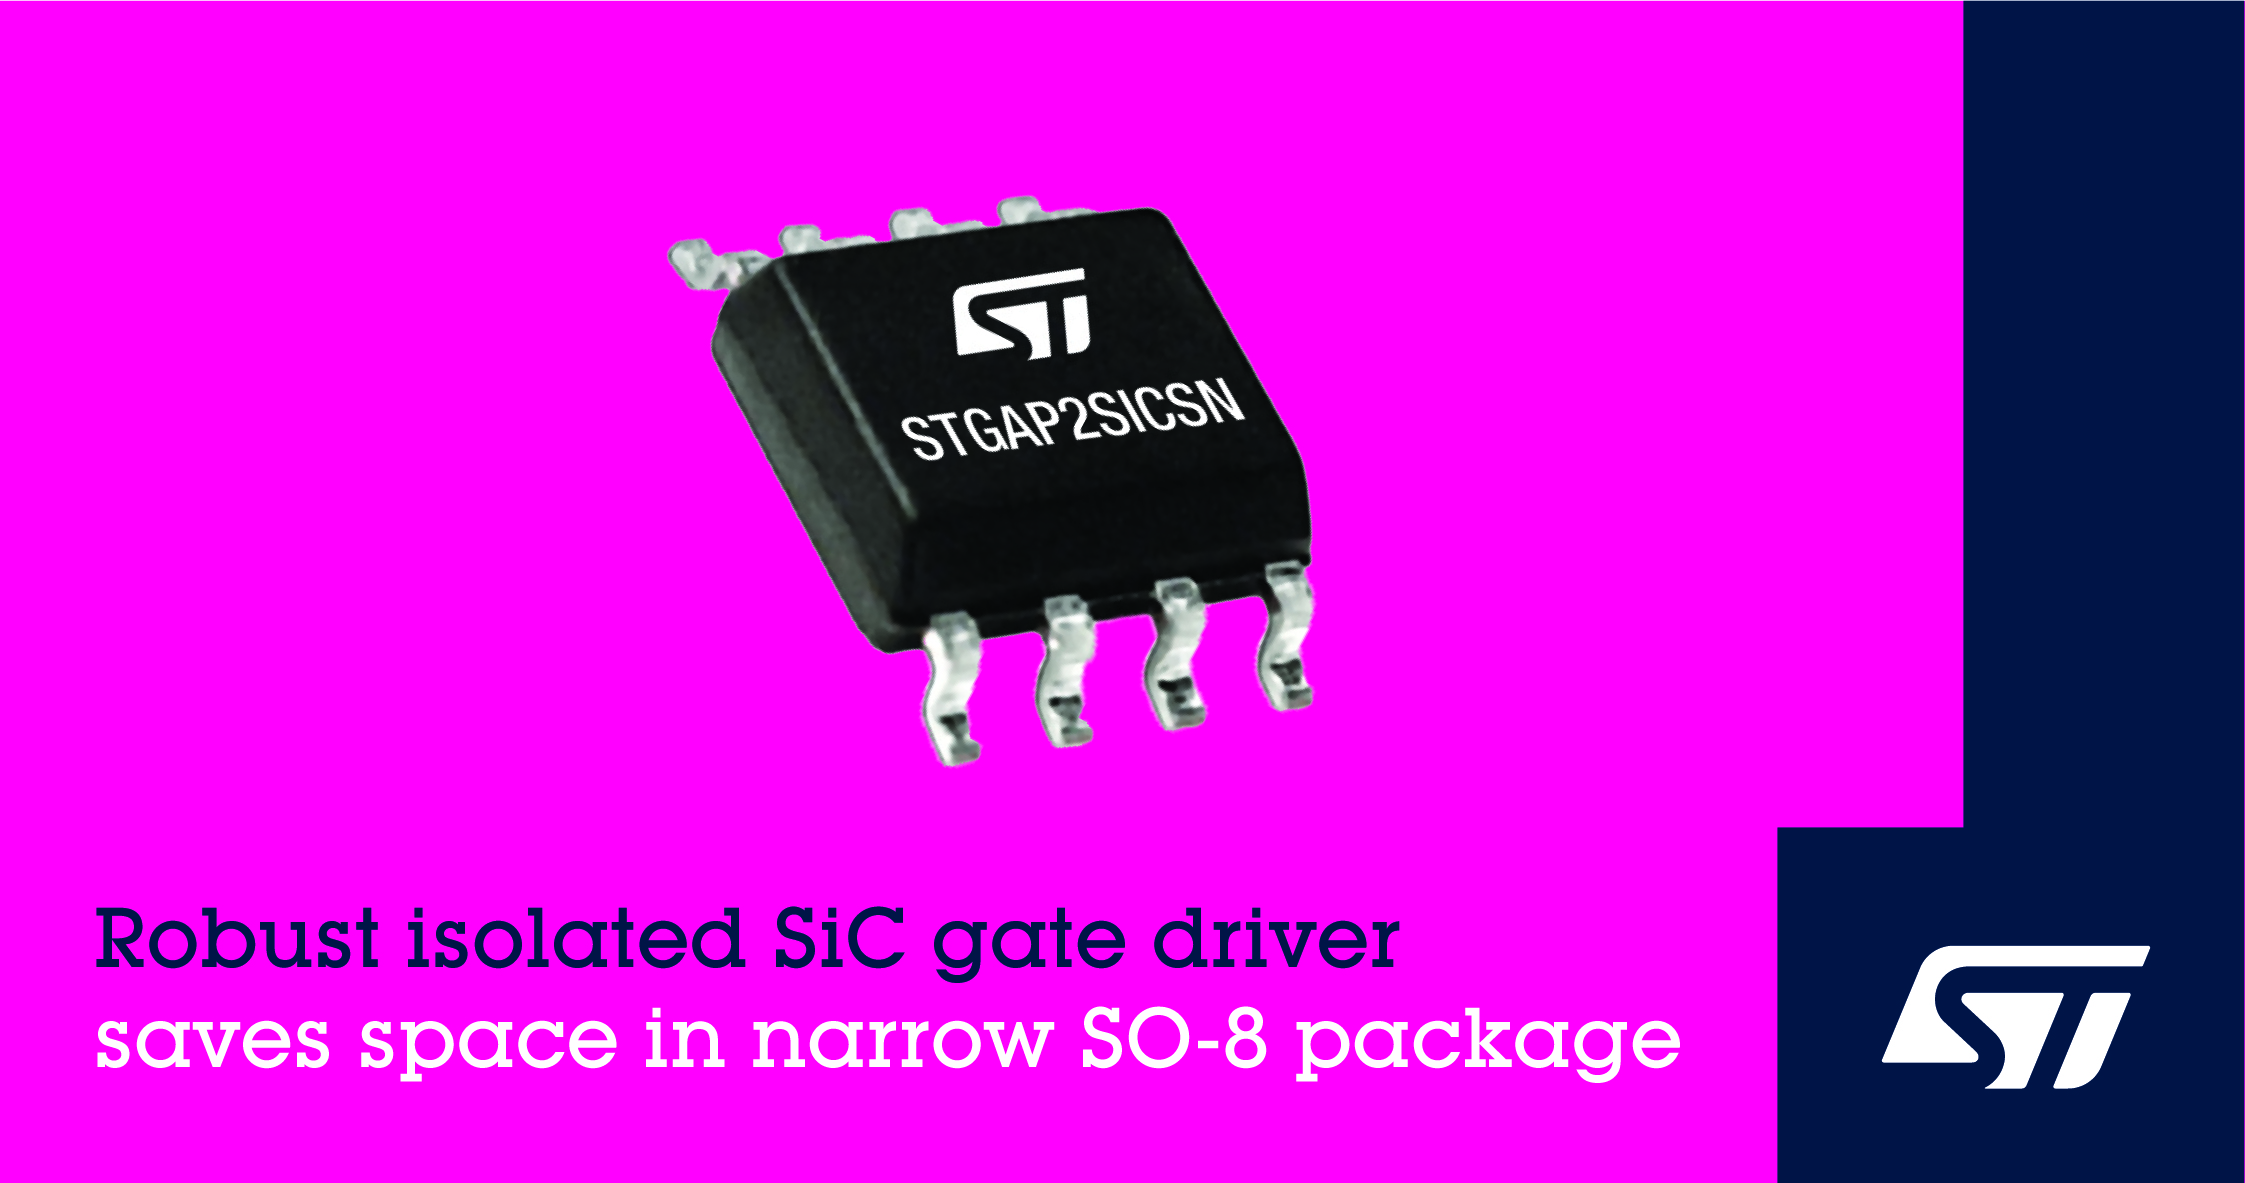 意法半导体的稳健的隔离式 SiC 栅极驱动器采用窄型 SO-8 封装可节省空间